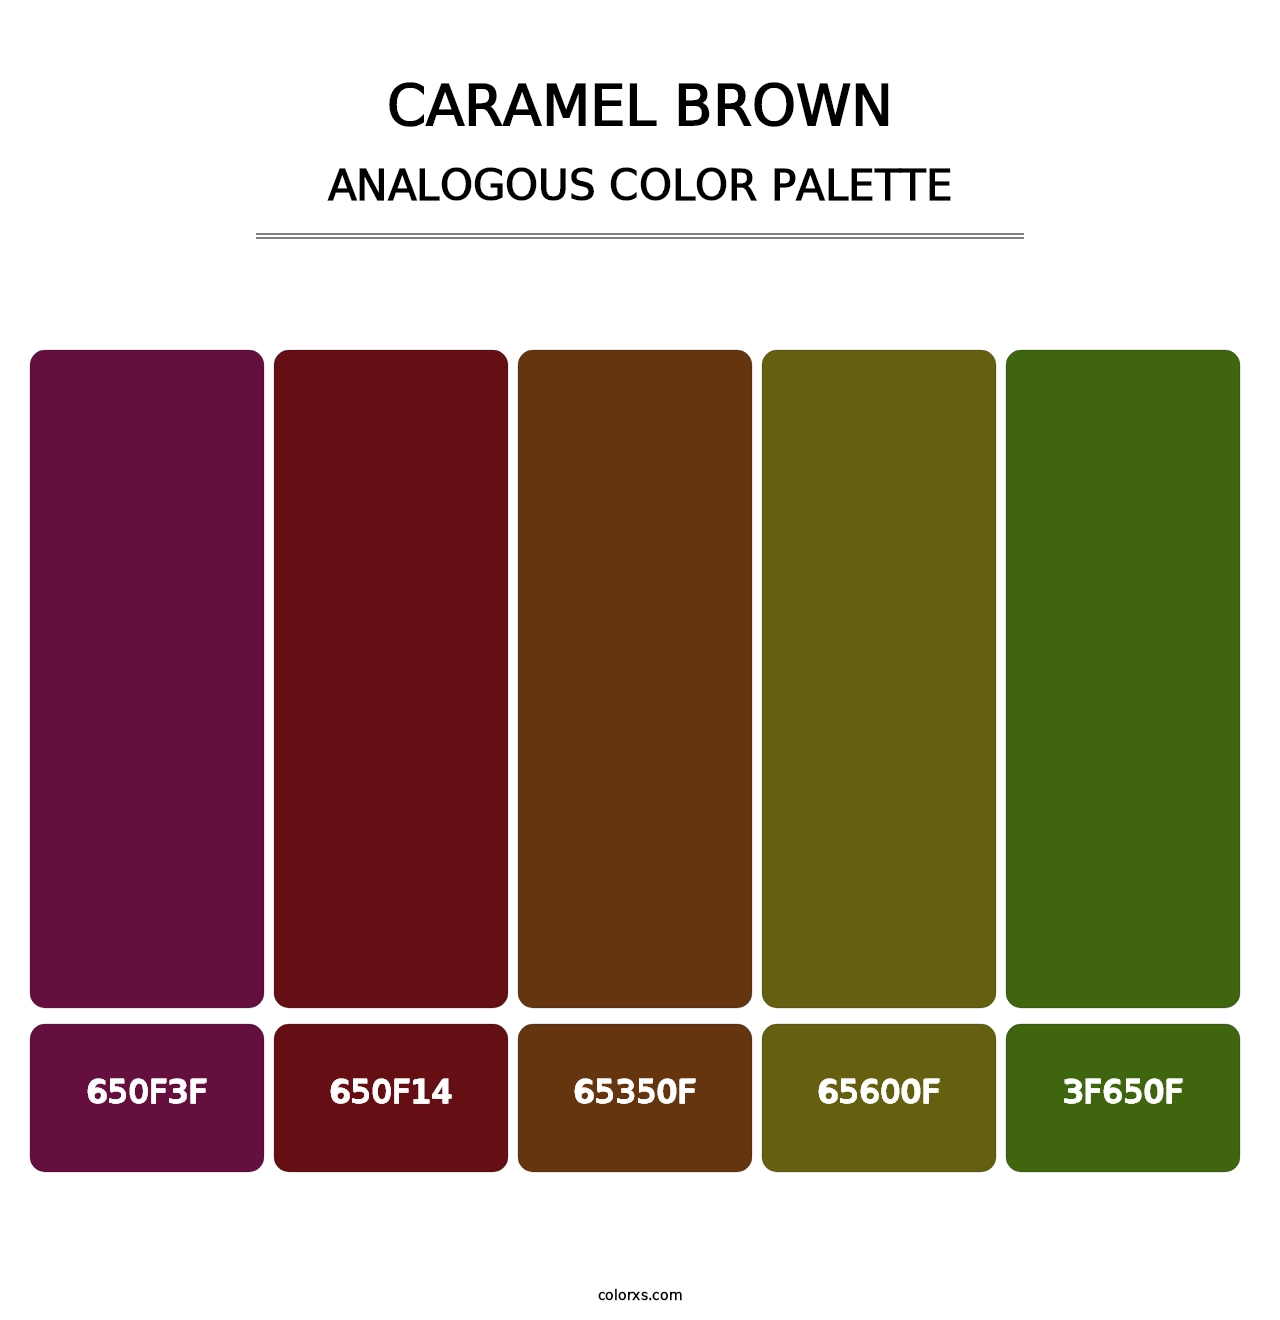 Caramel Brown - Analogous Color Palette